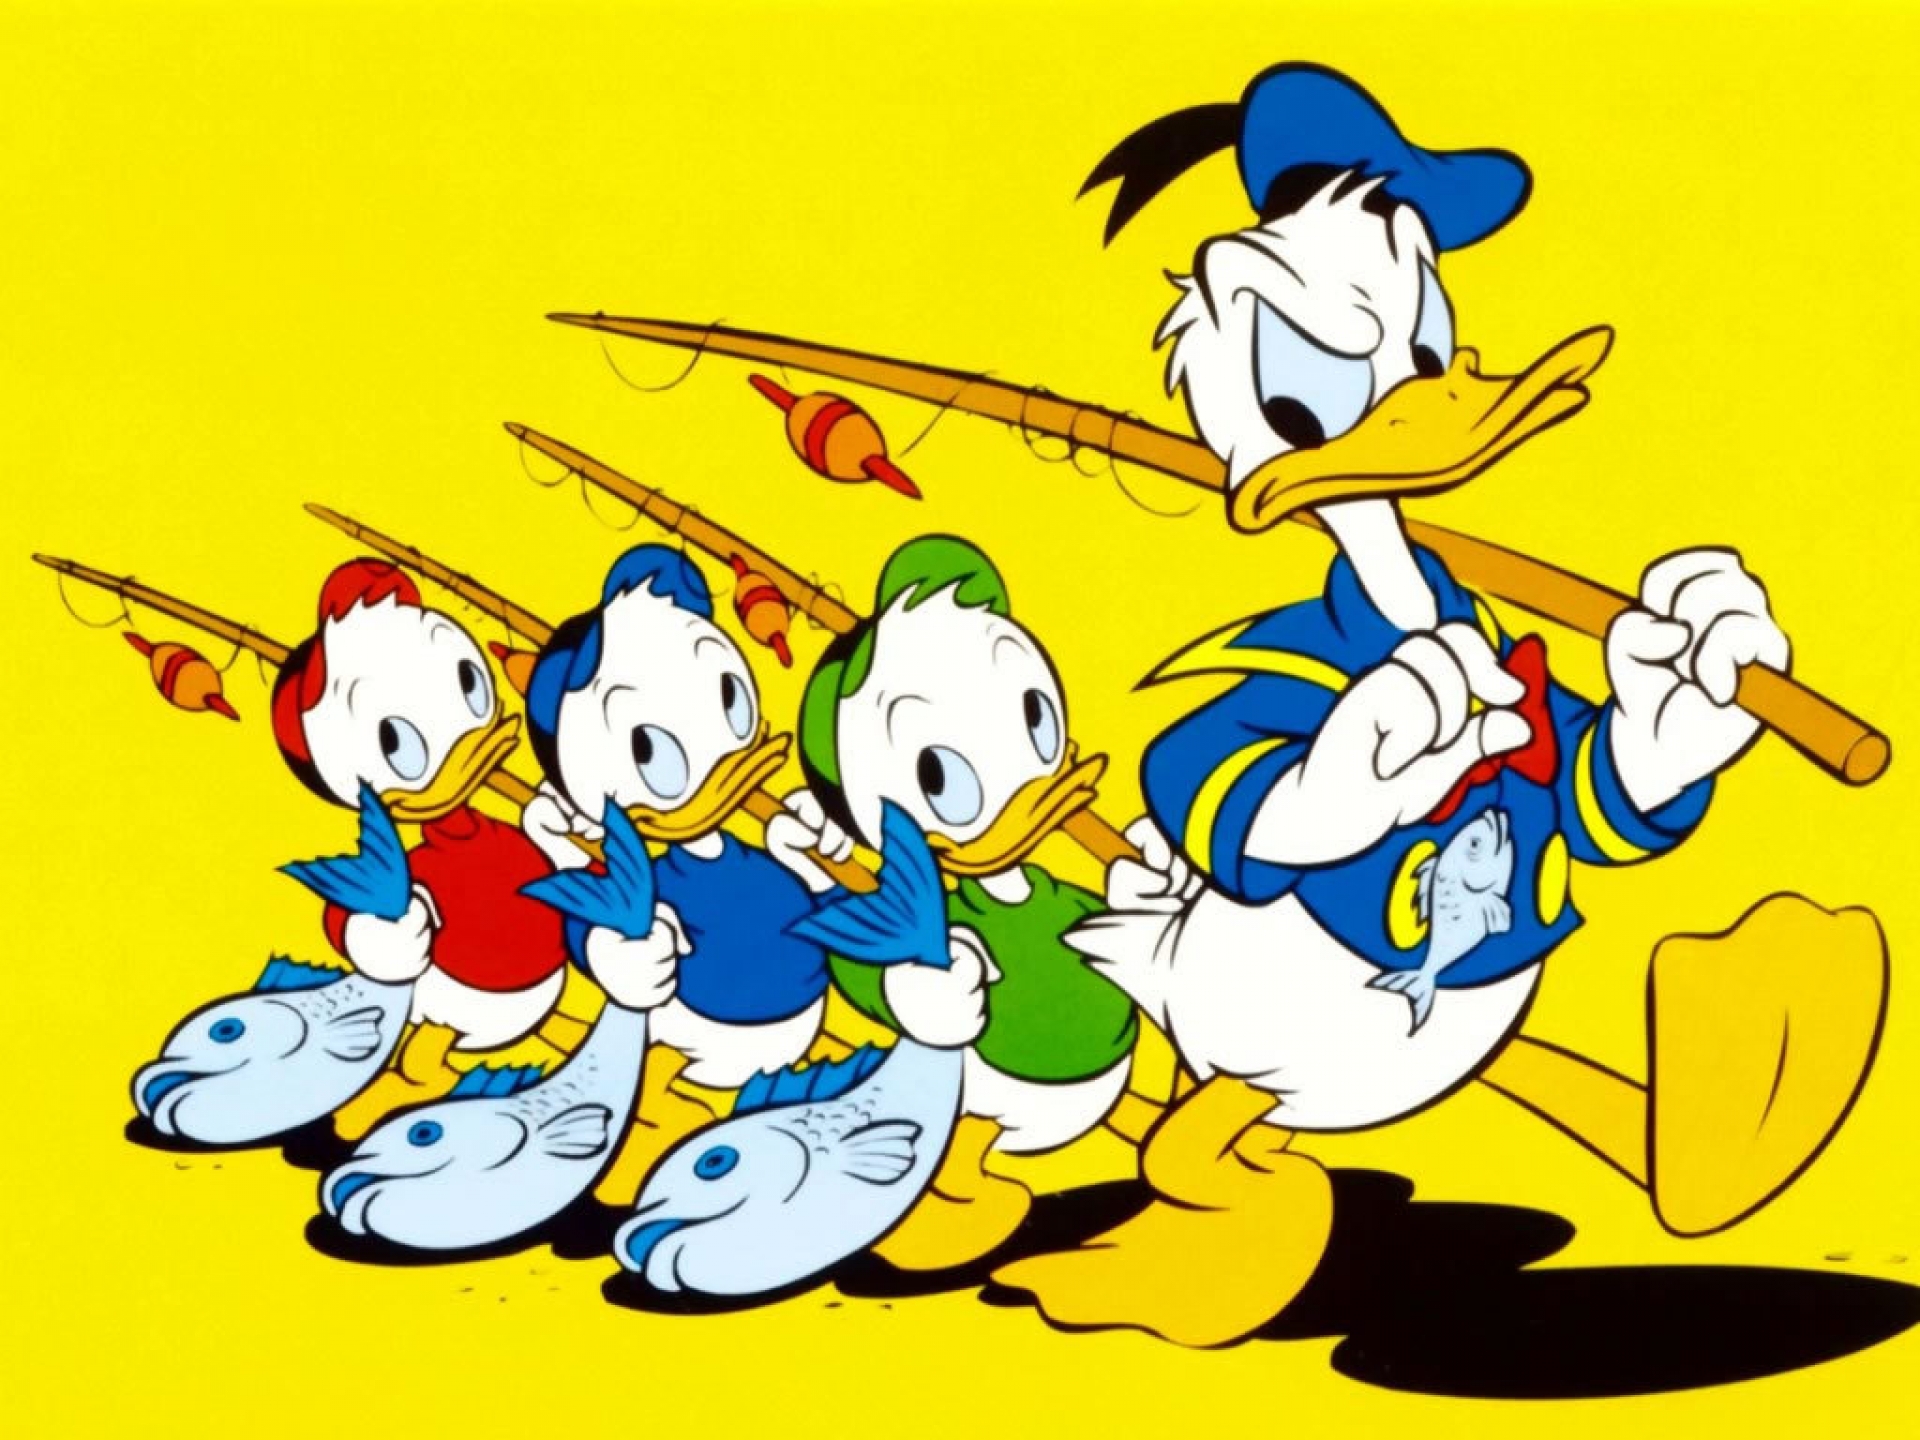 Donald duck kids cartoon